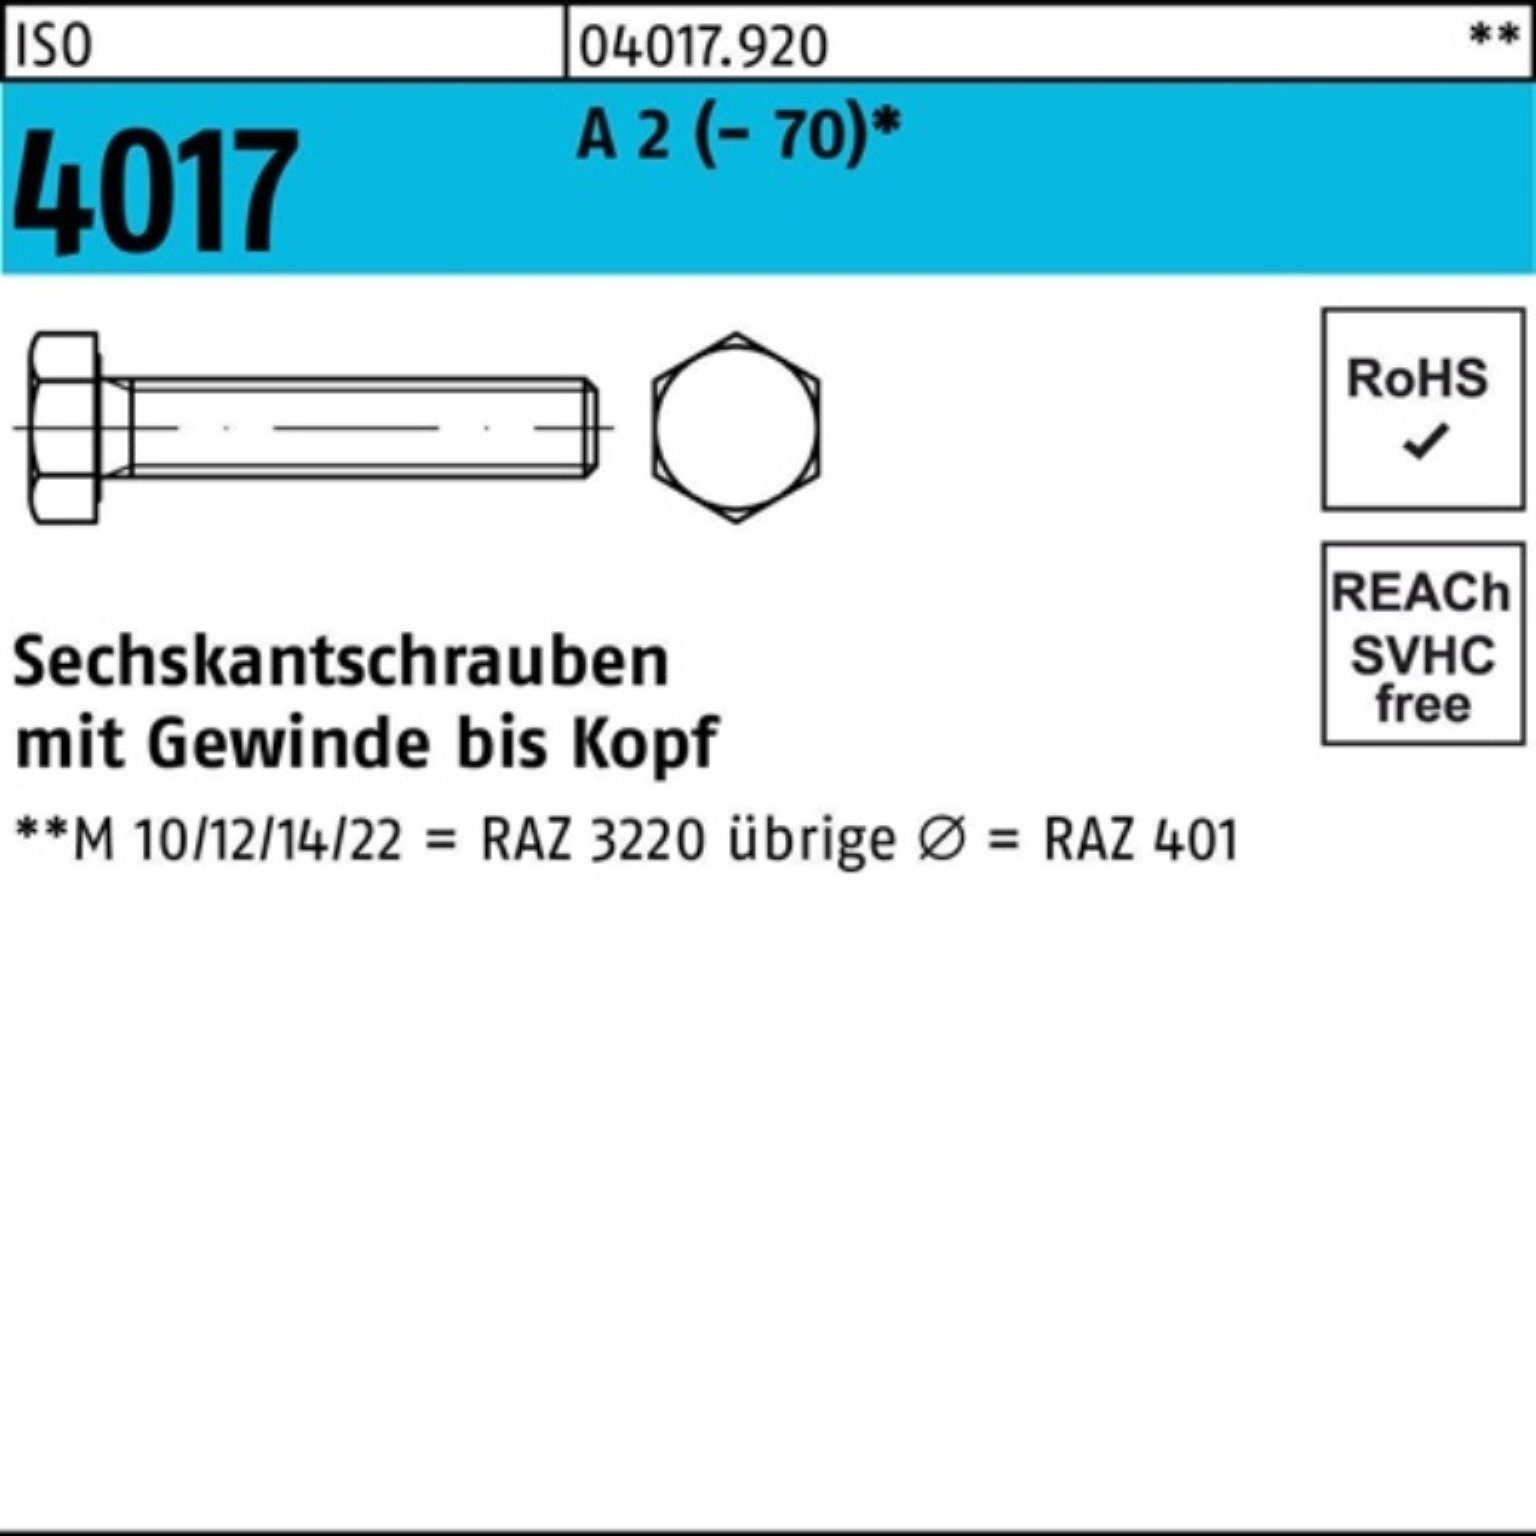 100er Sechskantschraube Bufab Pack 4017 M20x (70) 2 Sechskantschraube 95 VG ISO A Stück 10